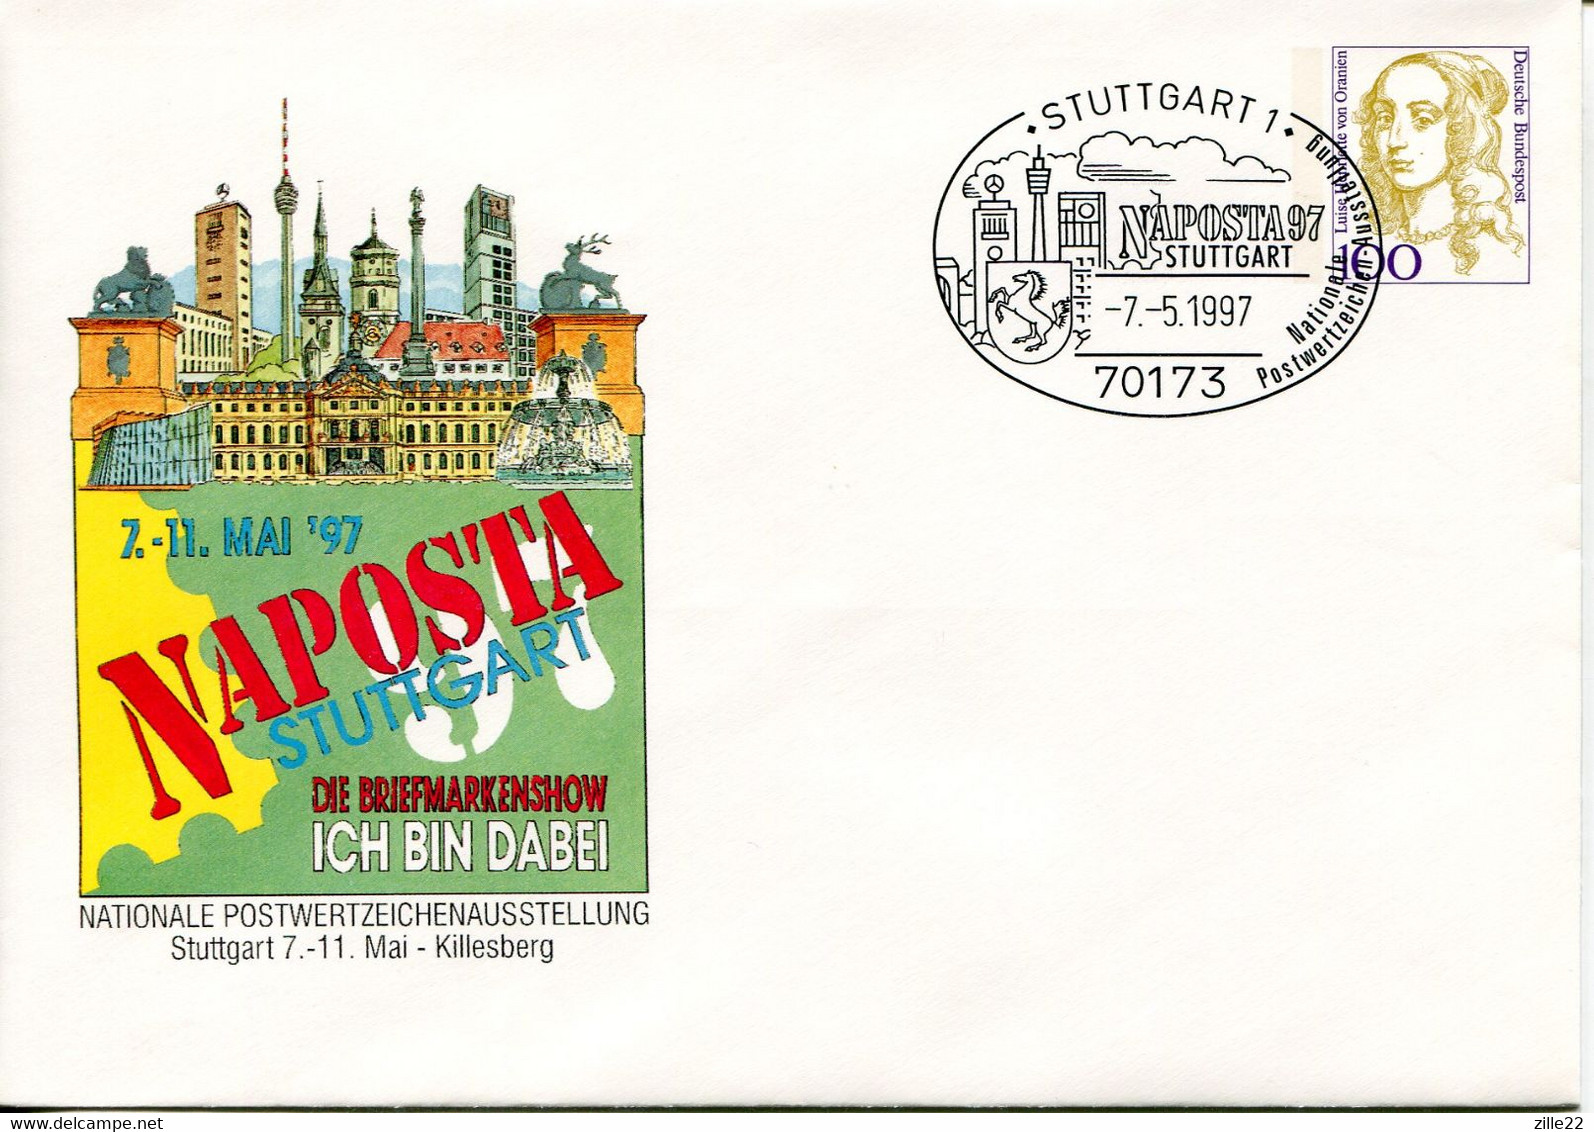 Germany Deutschland Postal Stationery - Cover - Von Oranien Design - Stamp Exhibition Stuttgart - Private Covers - Used